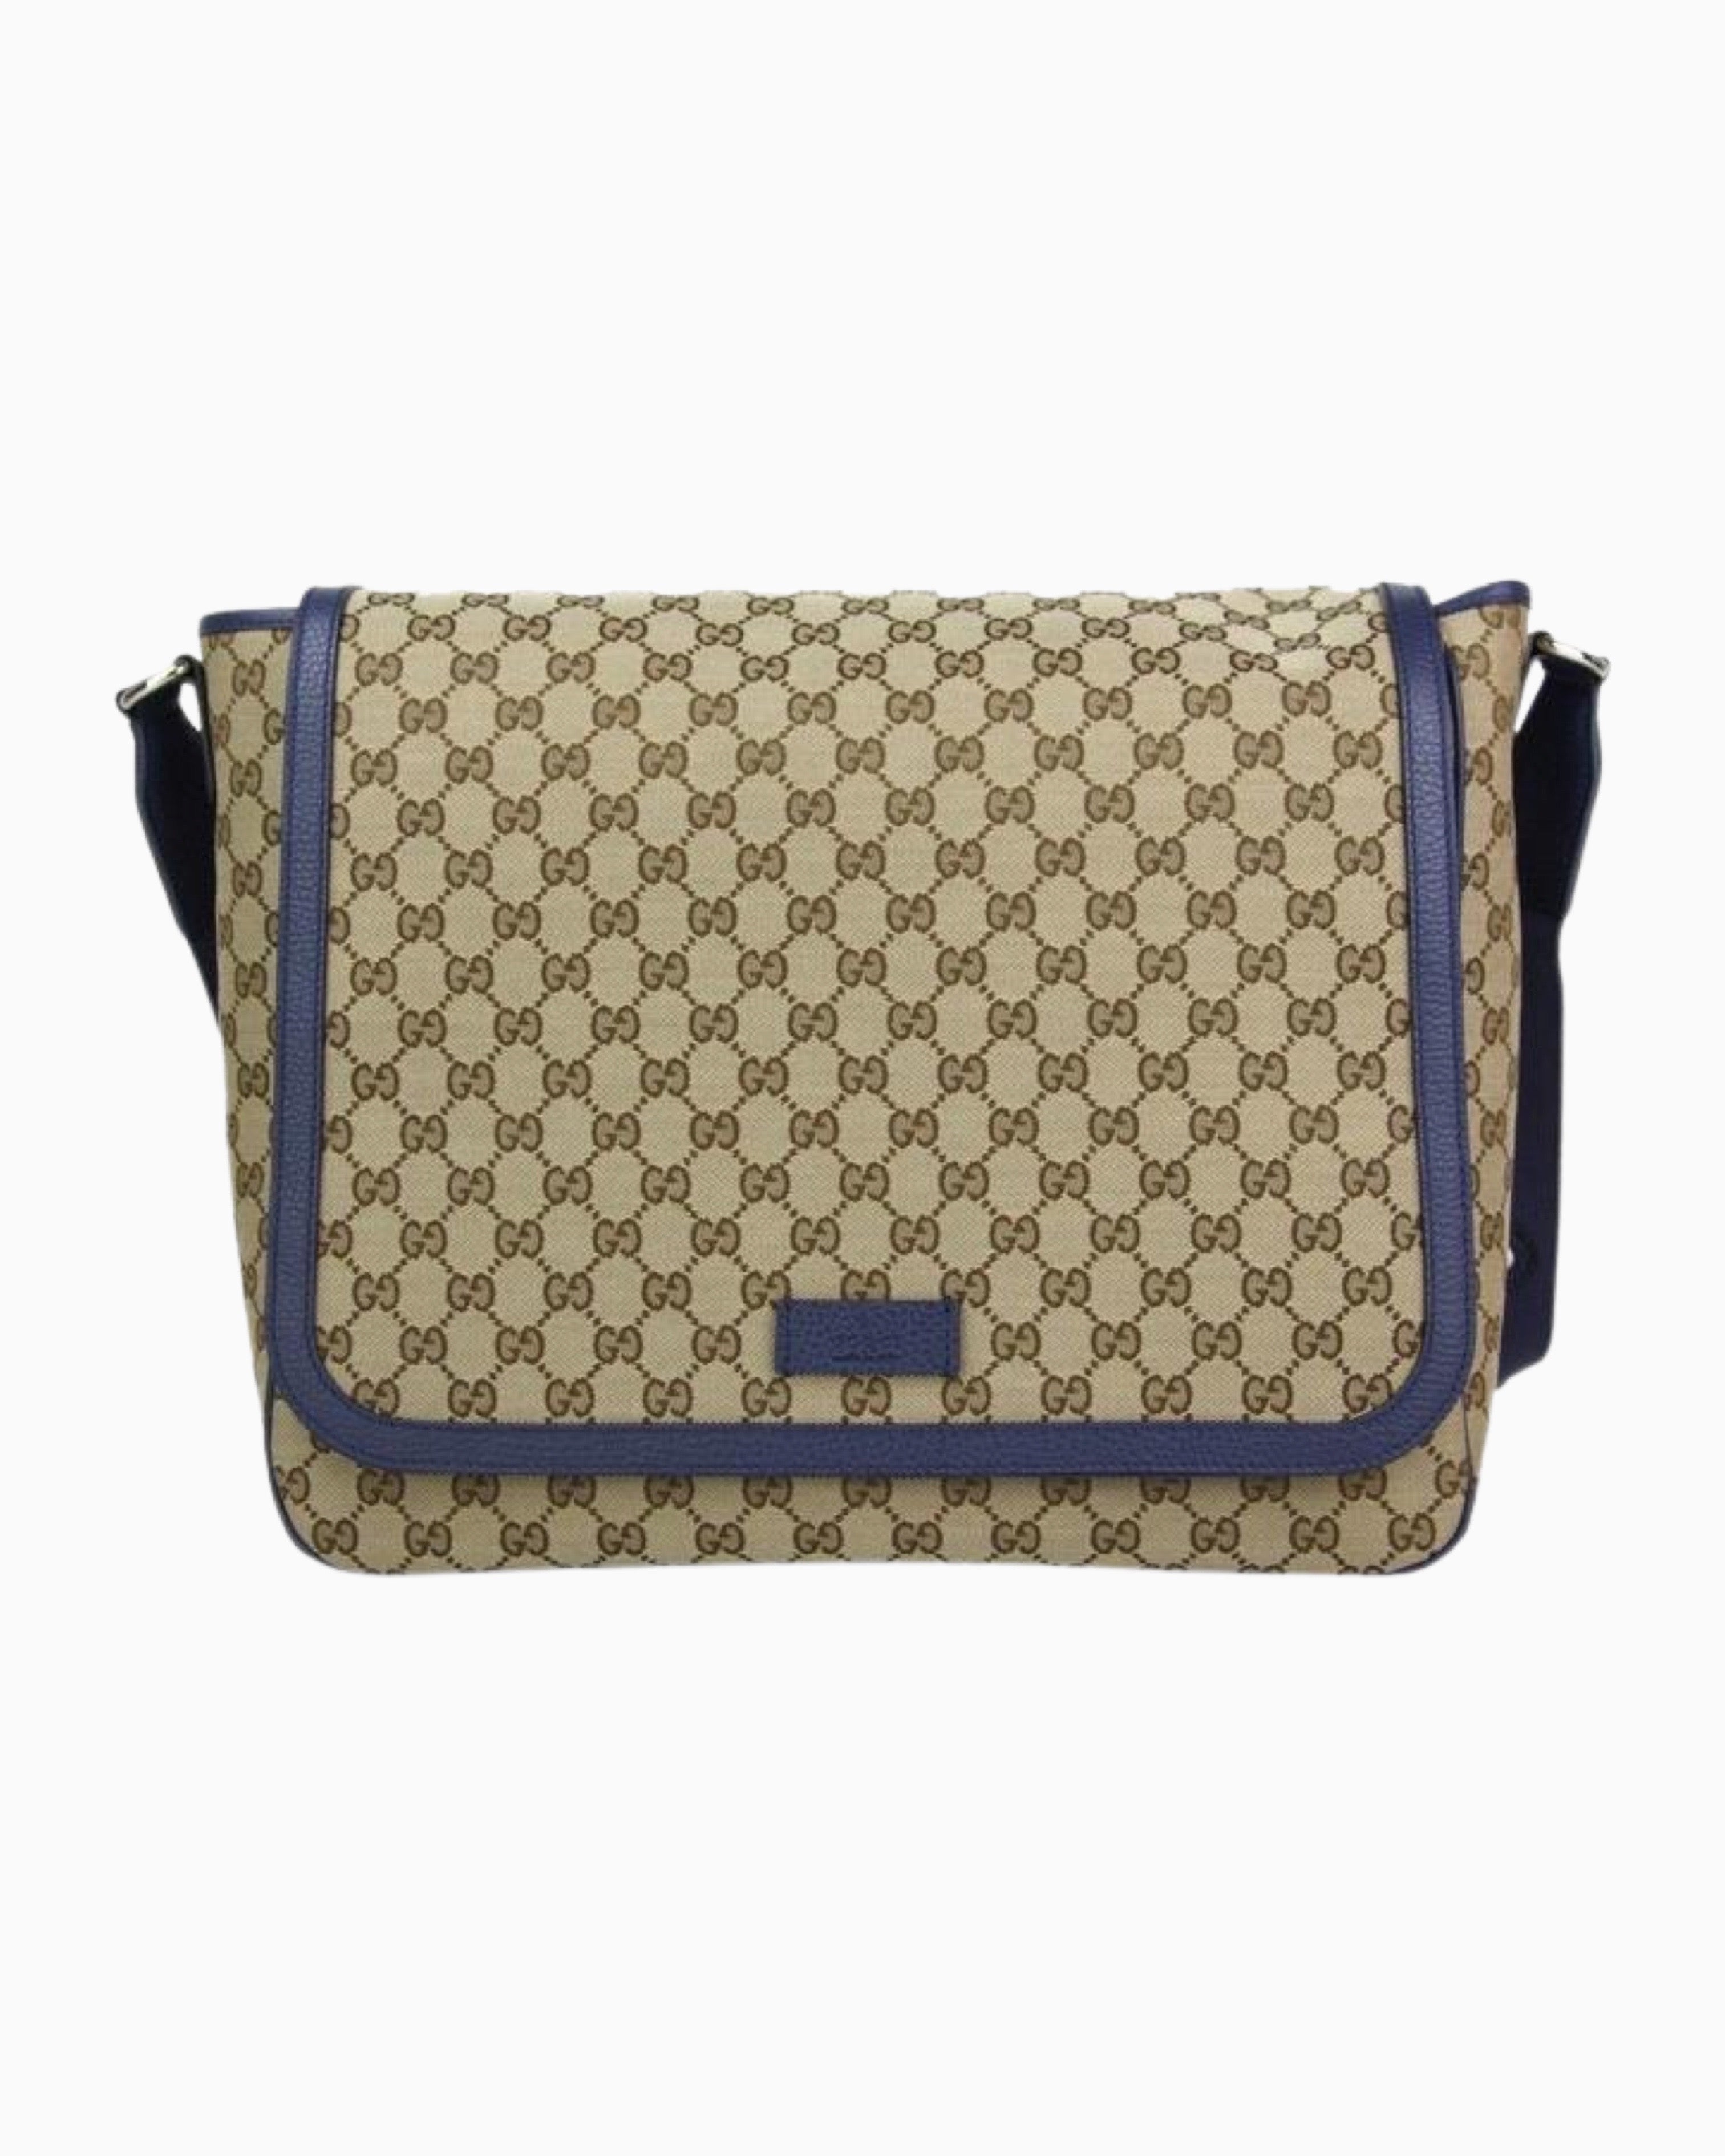 Gucci, Bags, Gucci Diaper Bag